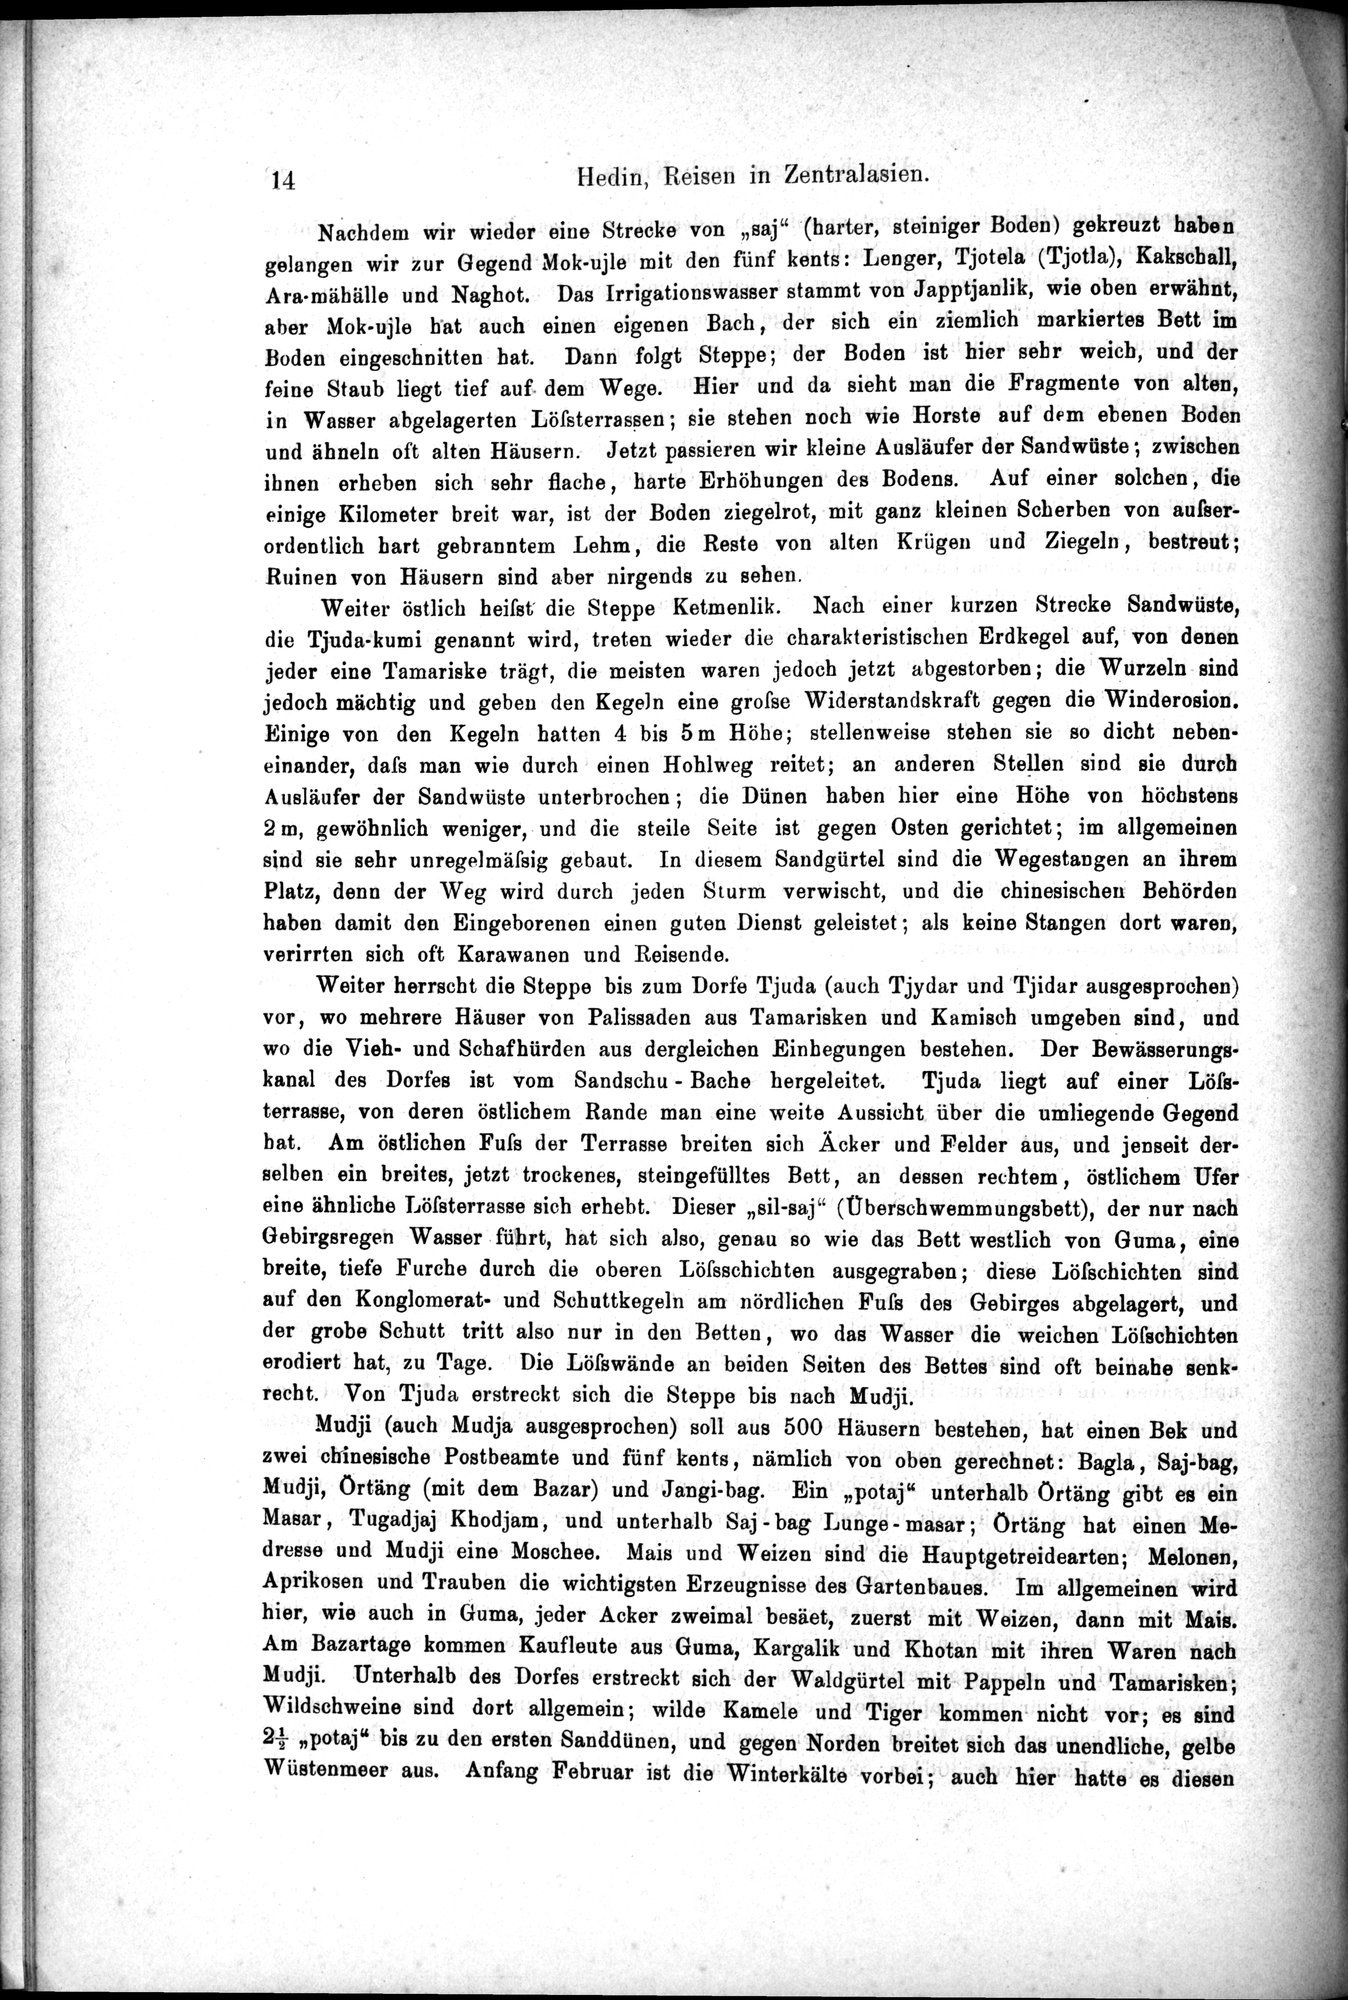 Die Geographische-Wissenschaftlichen Ergebnisse meiner Reisen in Zentralasien, 1894-1897 : vol.1 / Page 26 (Grayscale High Resolution Image)